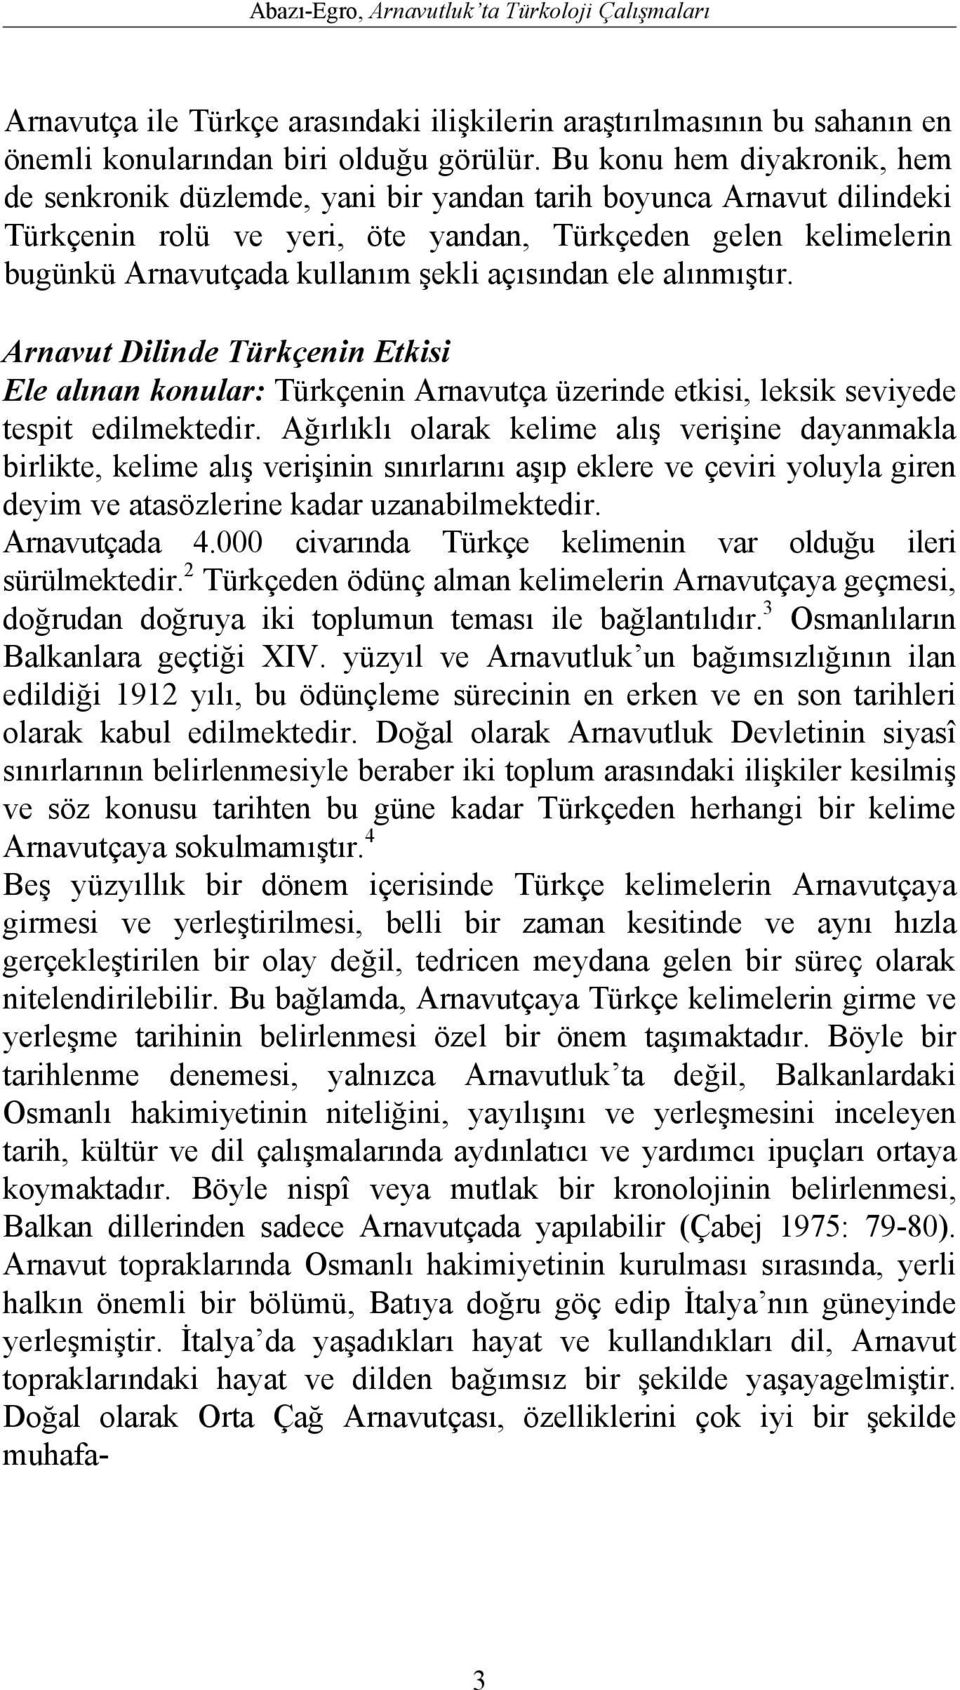 açısından ele alınmıştır. Arnavut Dilinde Türkçenin Etkisi Ele alınan konular: Türkçenin Arnavutça üzerinde etkisi, leksik seviyede tespit edilmektedir.